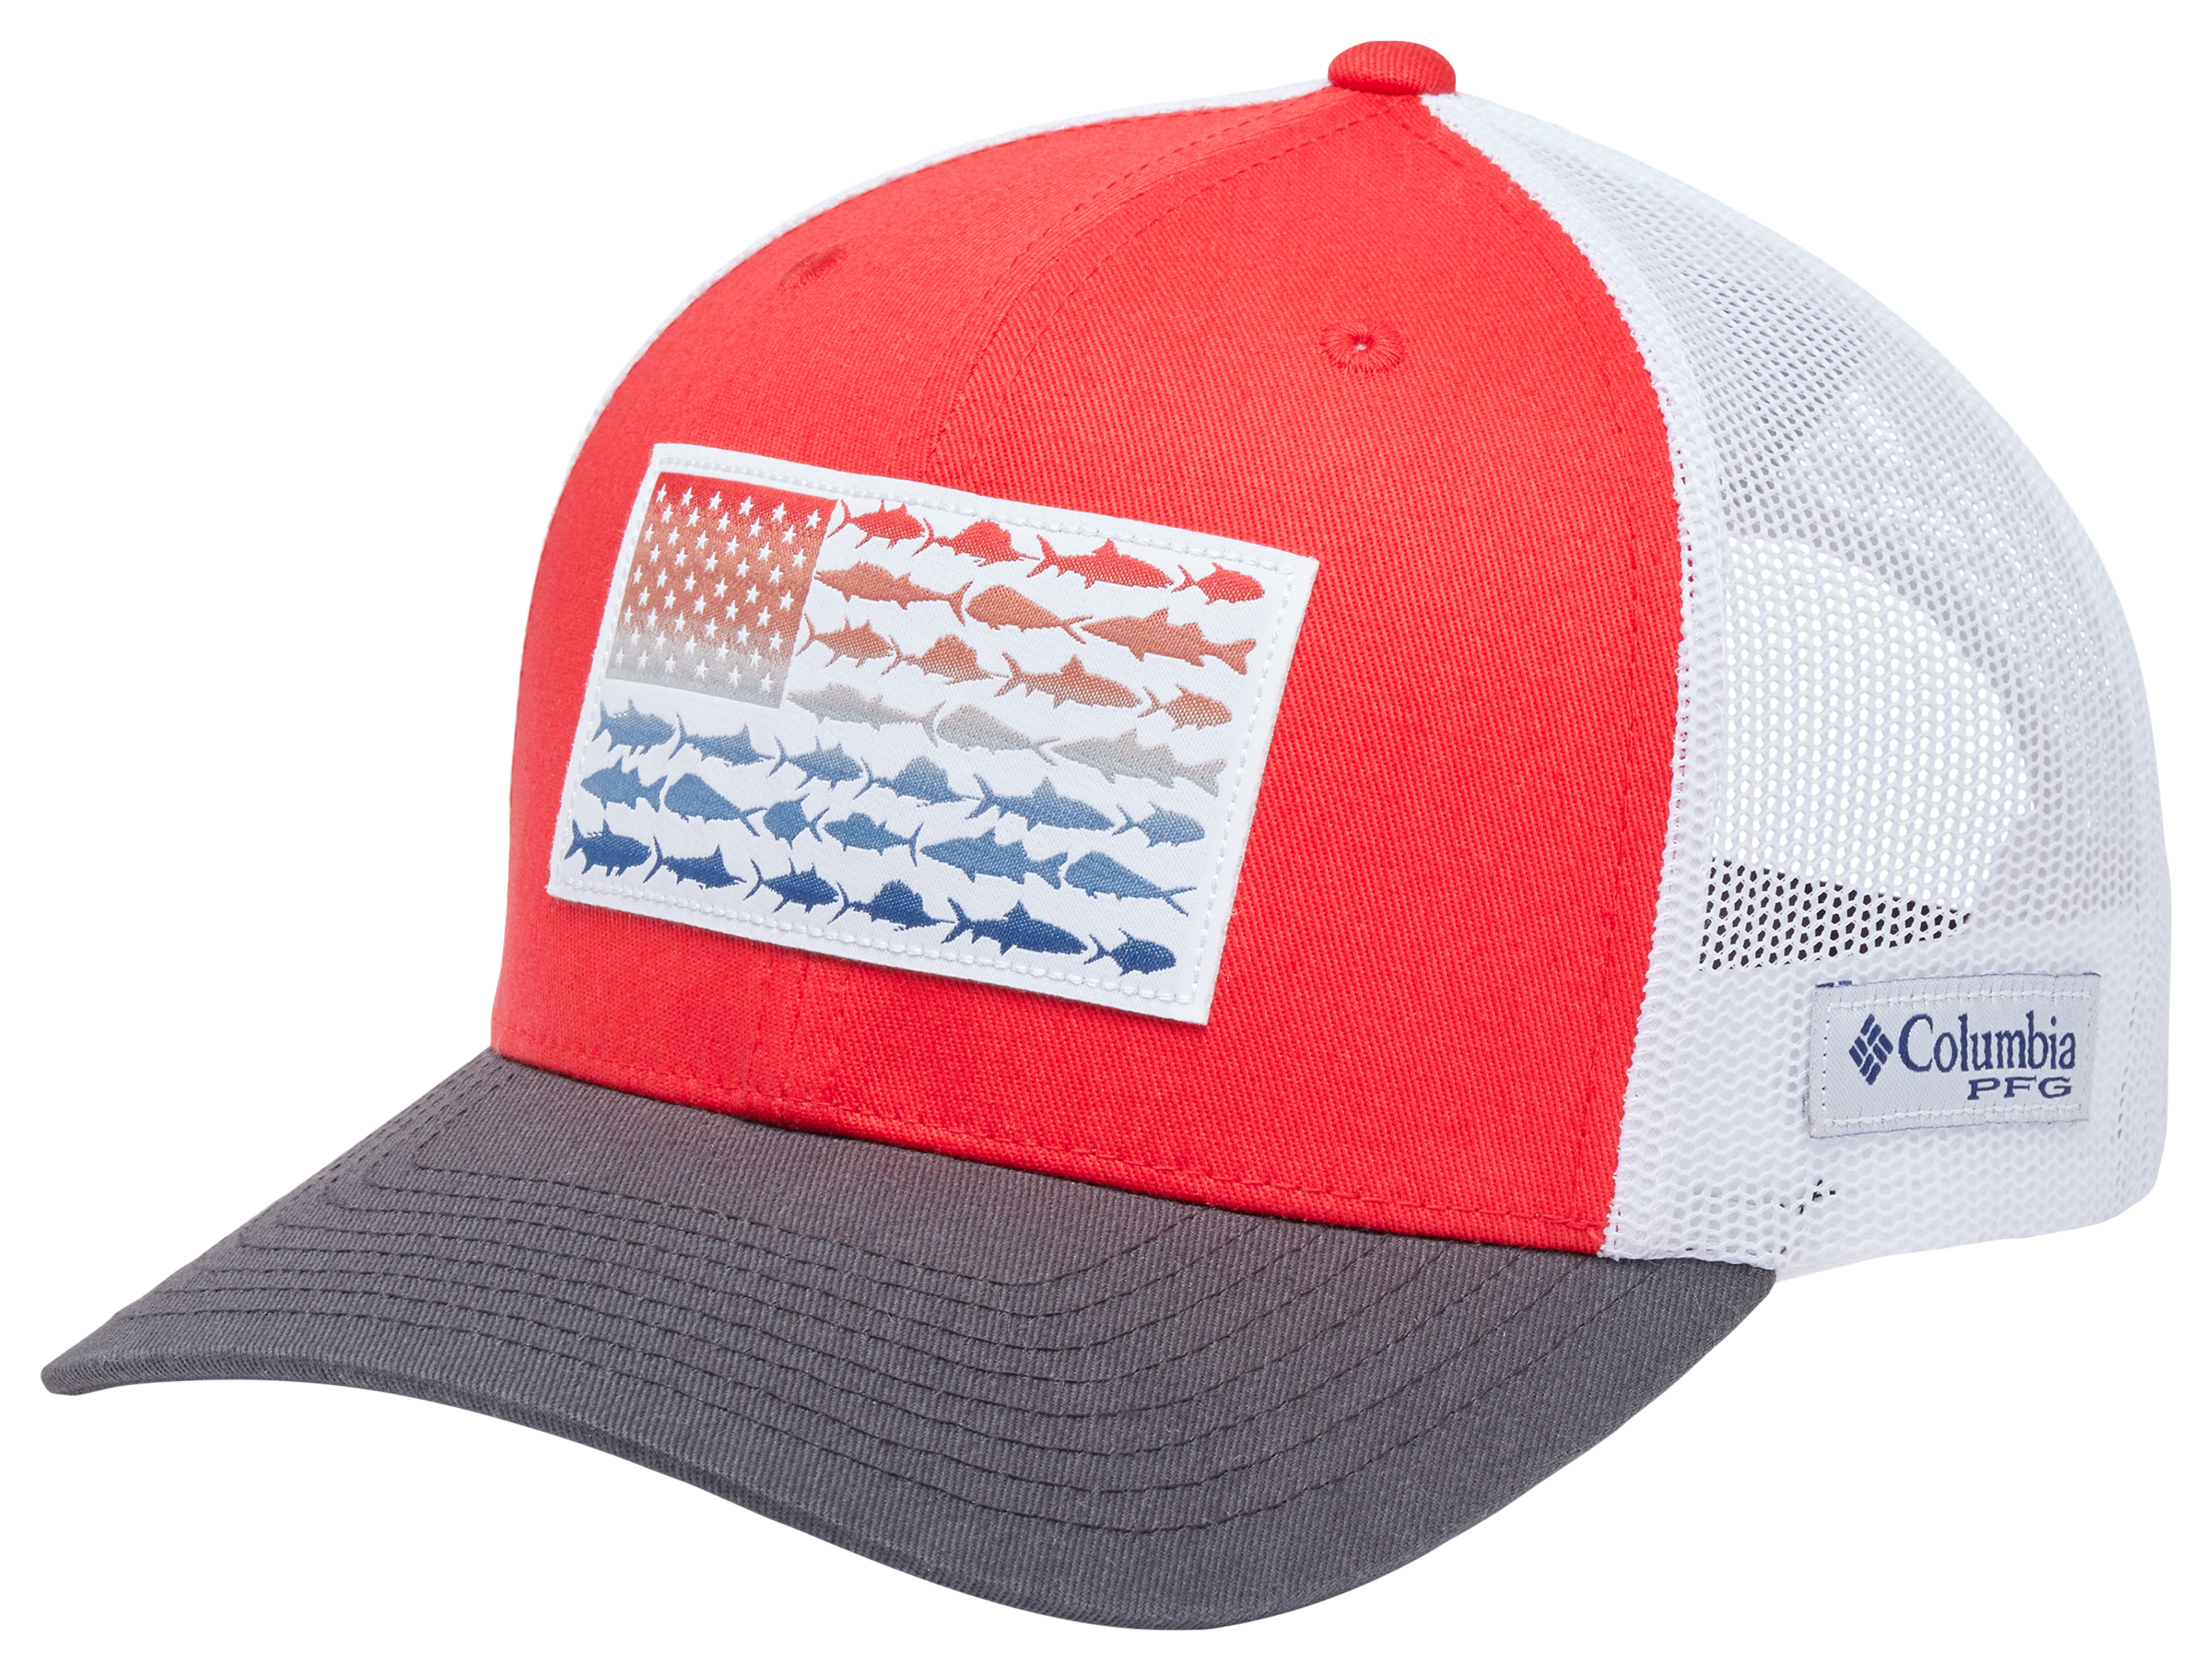 The Worst Day of Fishing Baseball Cap for Men Women Adjustable Mesh Trucker  Hat Red